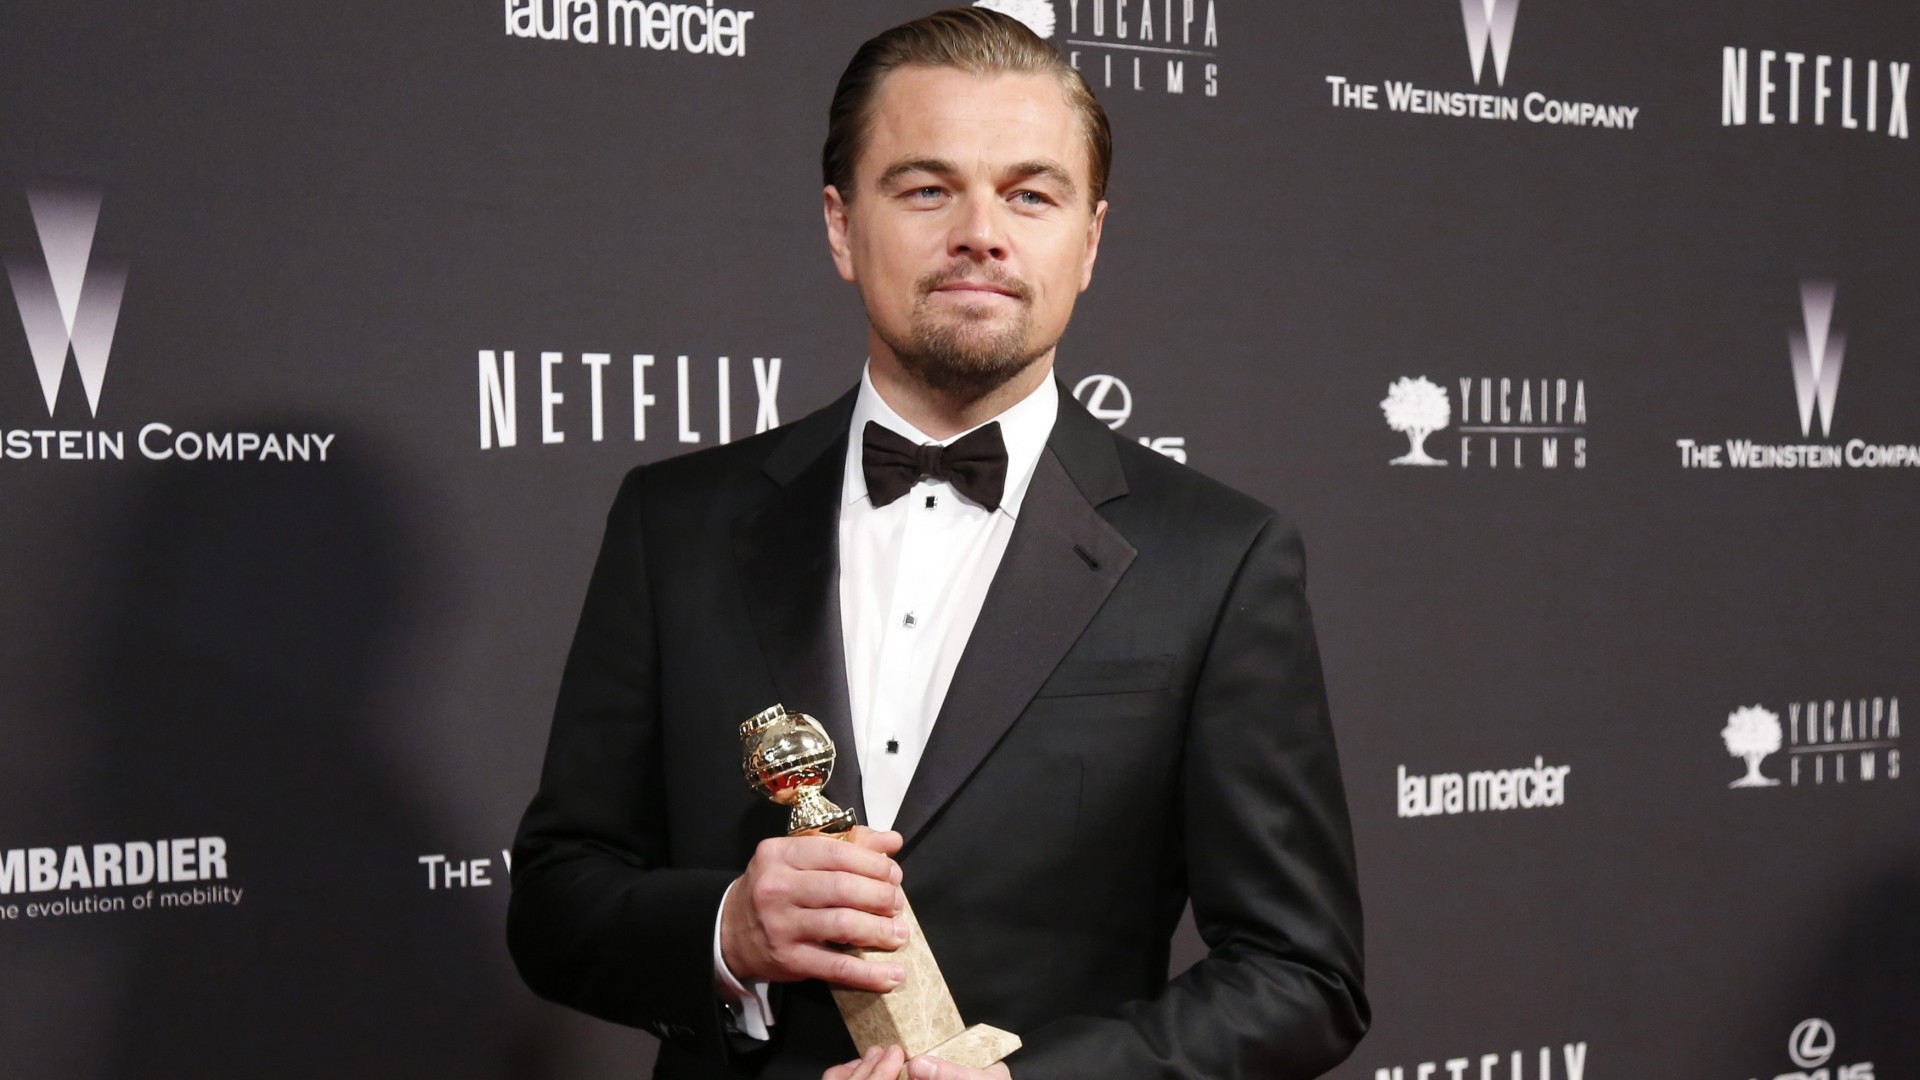 Leonardo DiCaprio, 86th Academy Awards, oscar, Golden Globe, actor, film producer (horizontal)